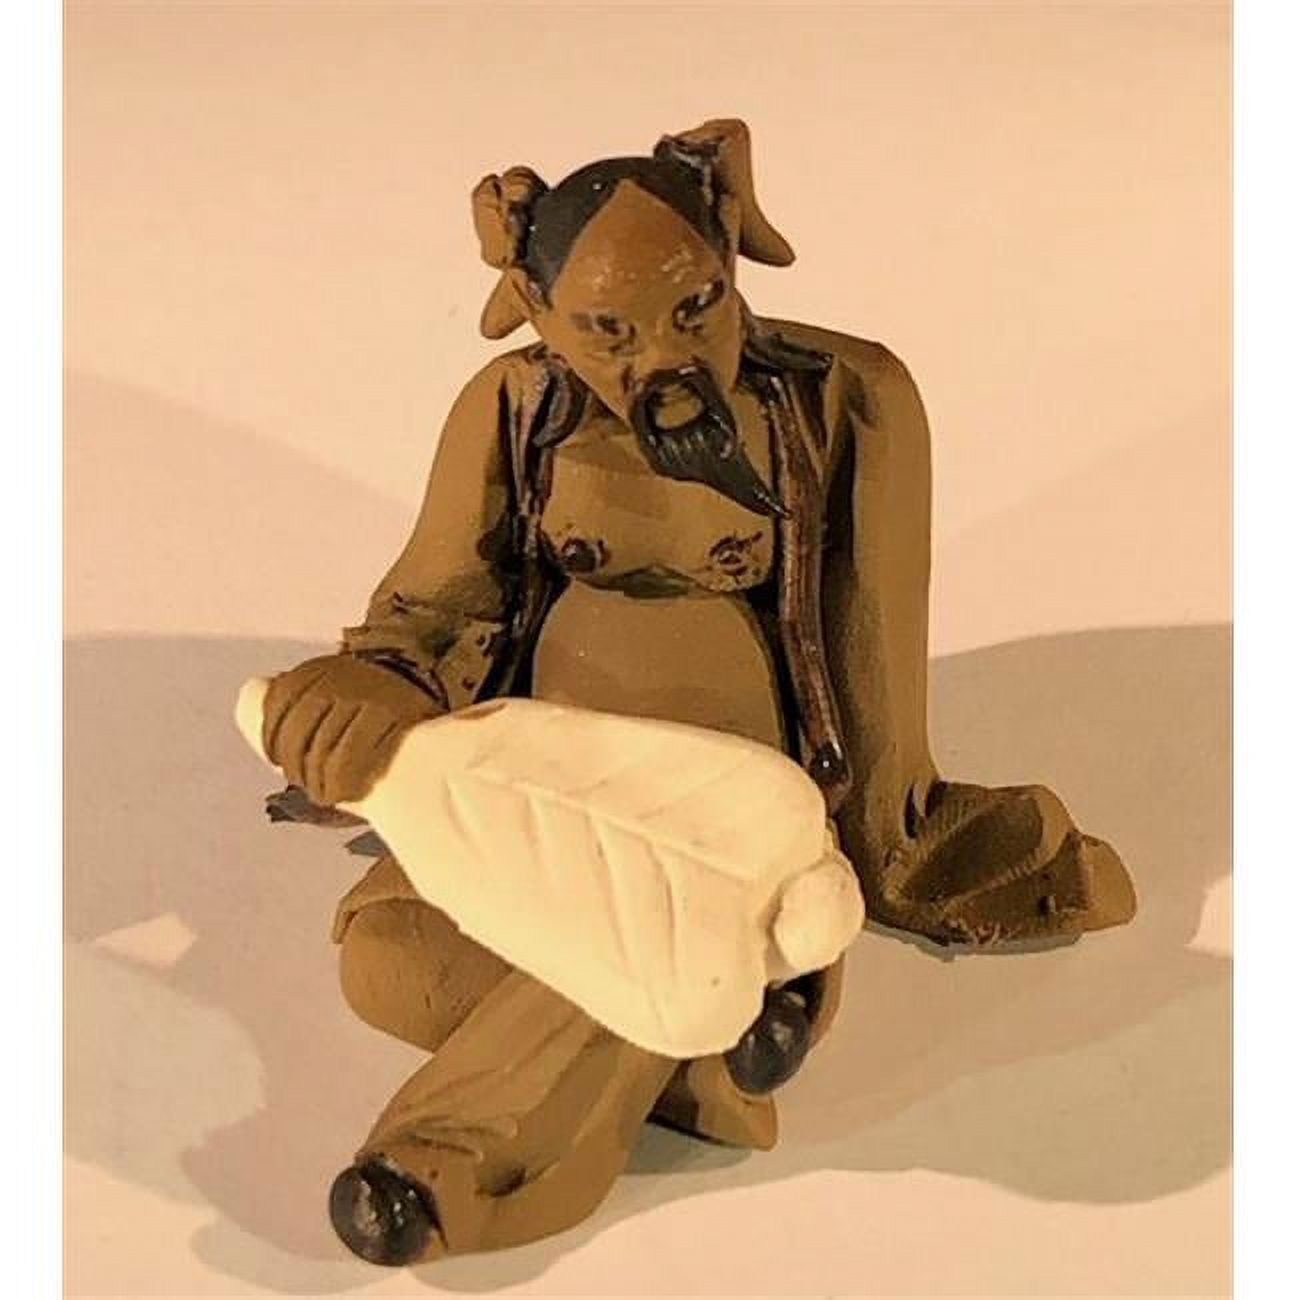 Picture of Bonsai Boy e3411 2 in. Ceramic Figurine - Mud Man Holding A Fan Sitting Down